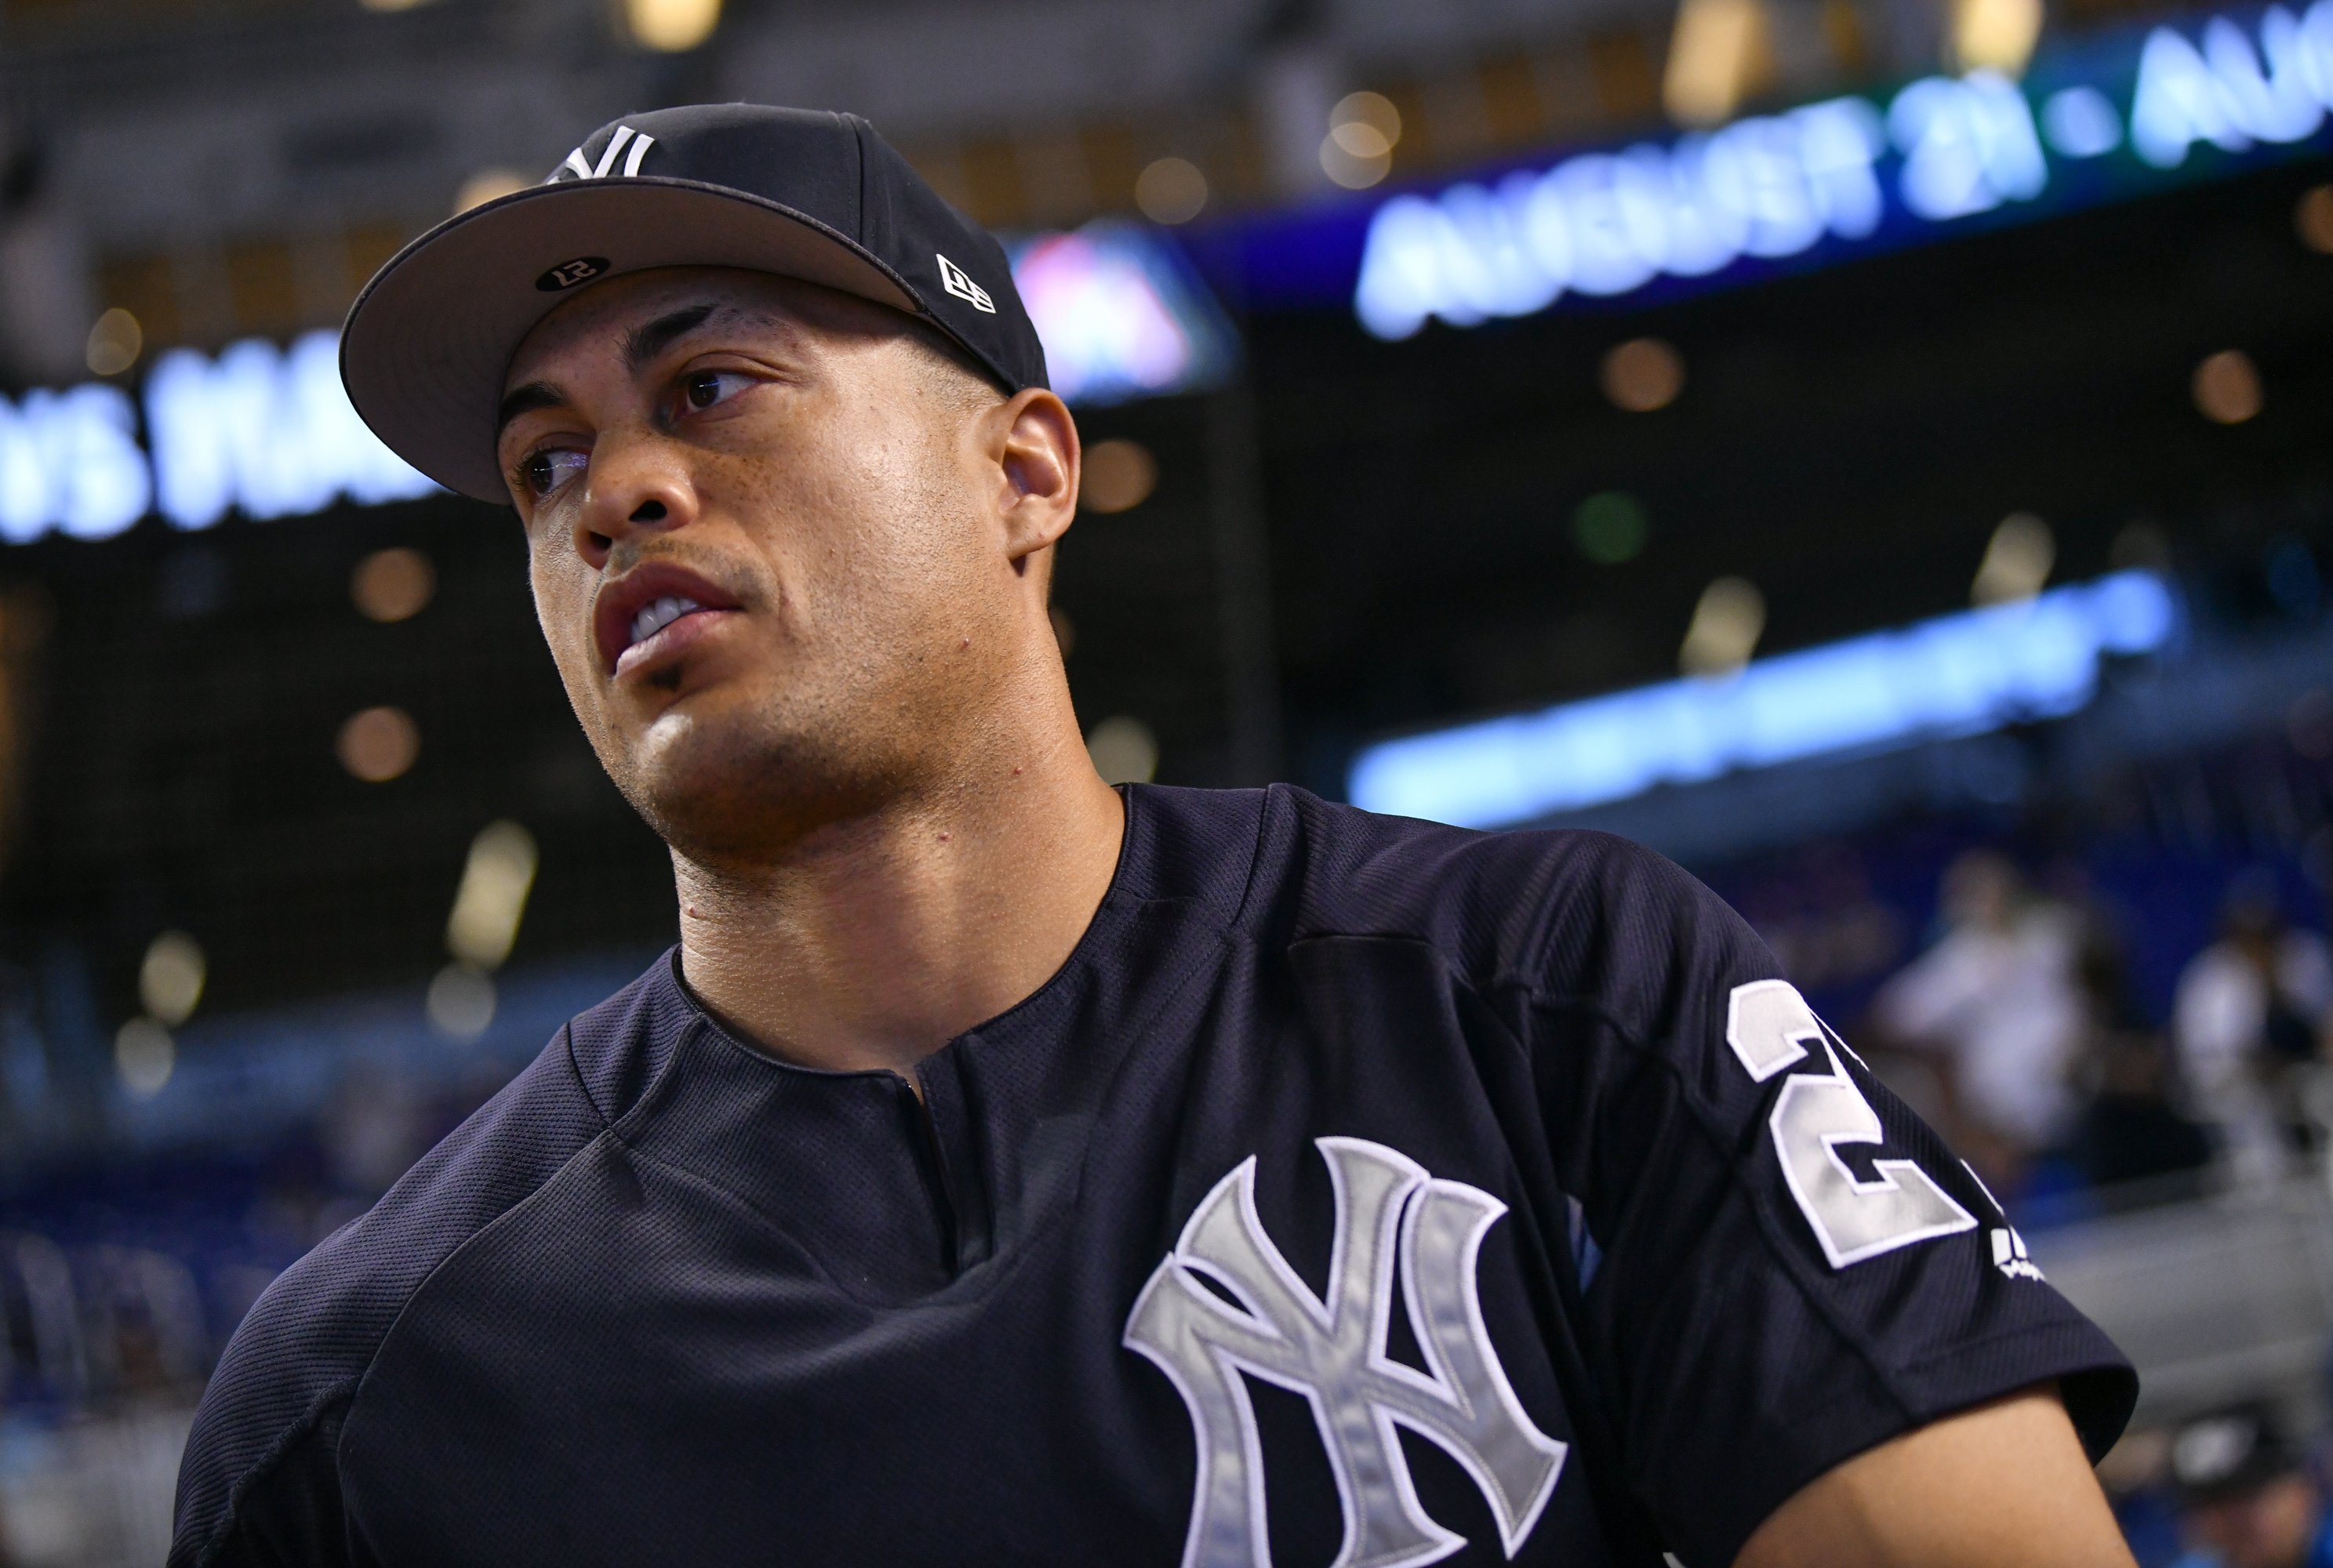 Giancarlo Stanton Earning His $325M in Saving Judge-Less Yankees